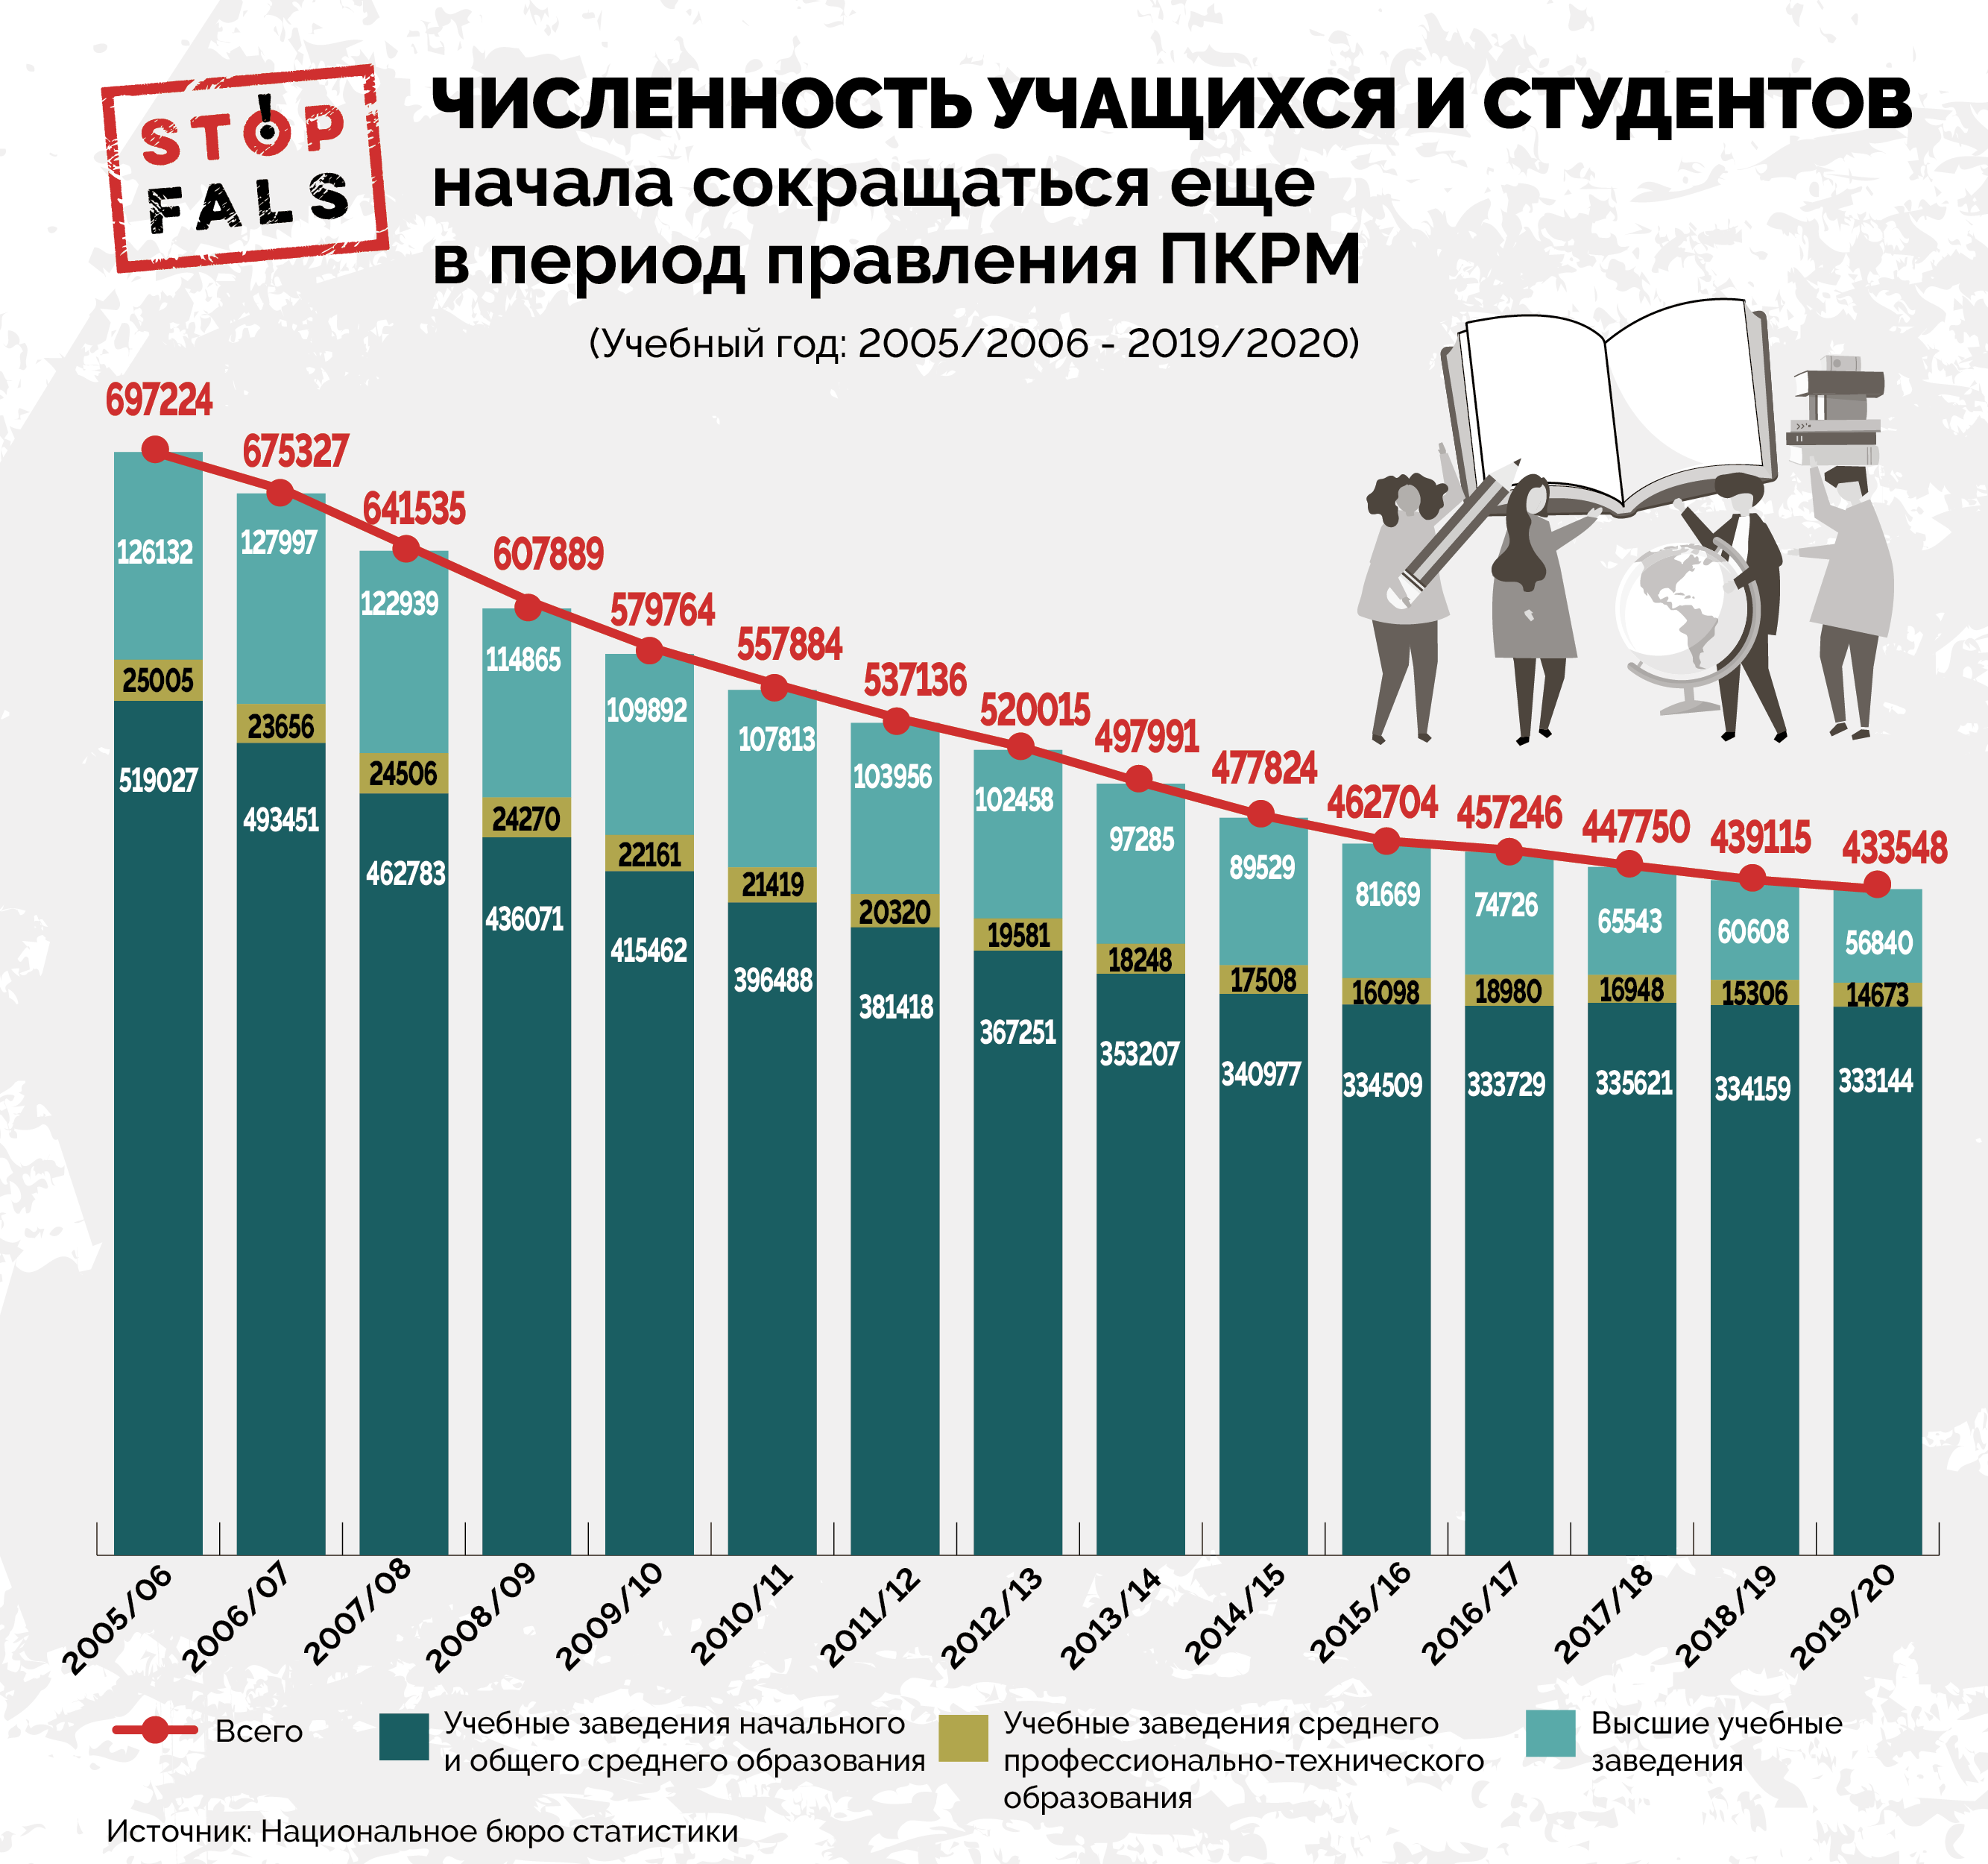 Количество учеников в россии